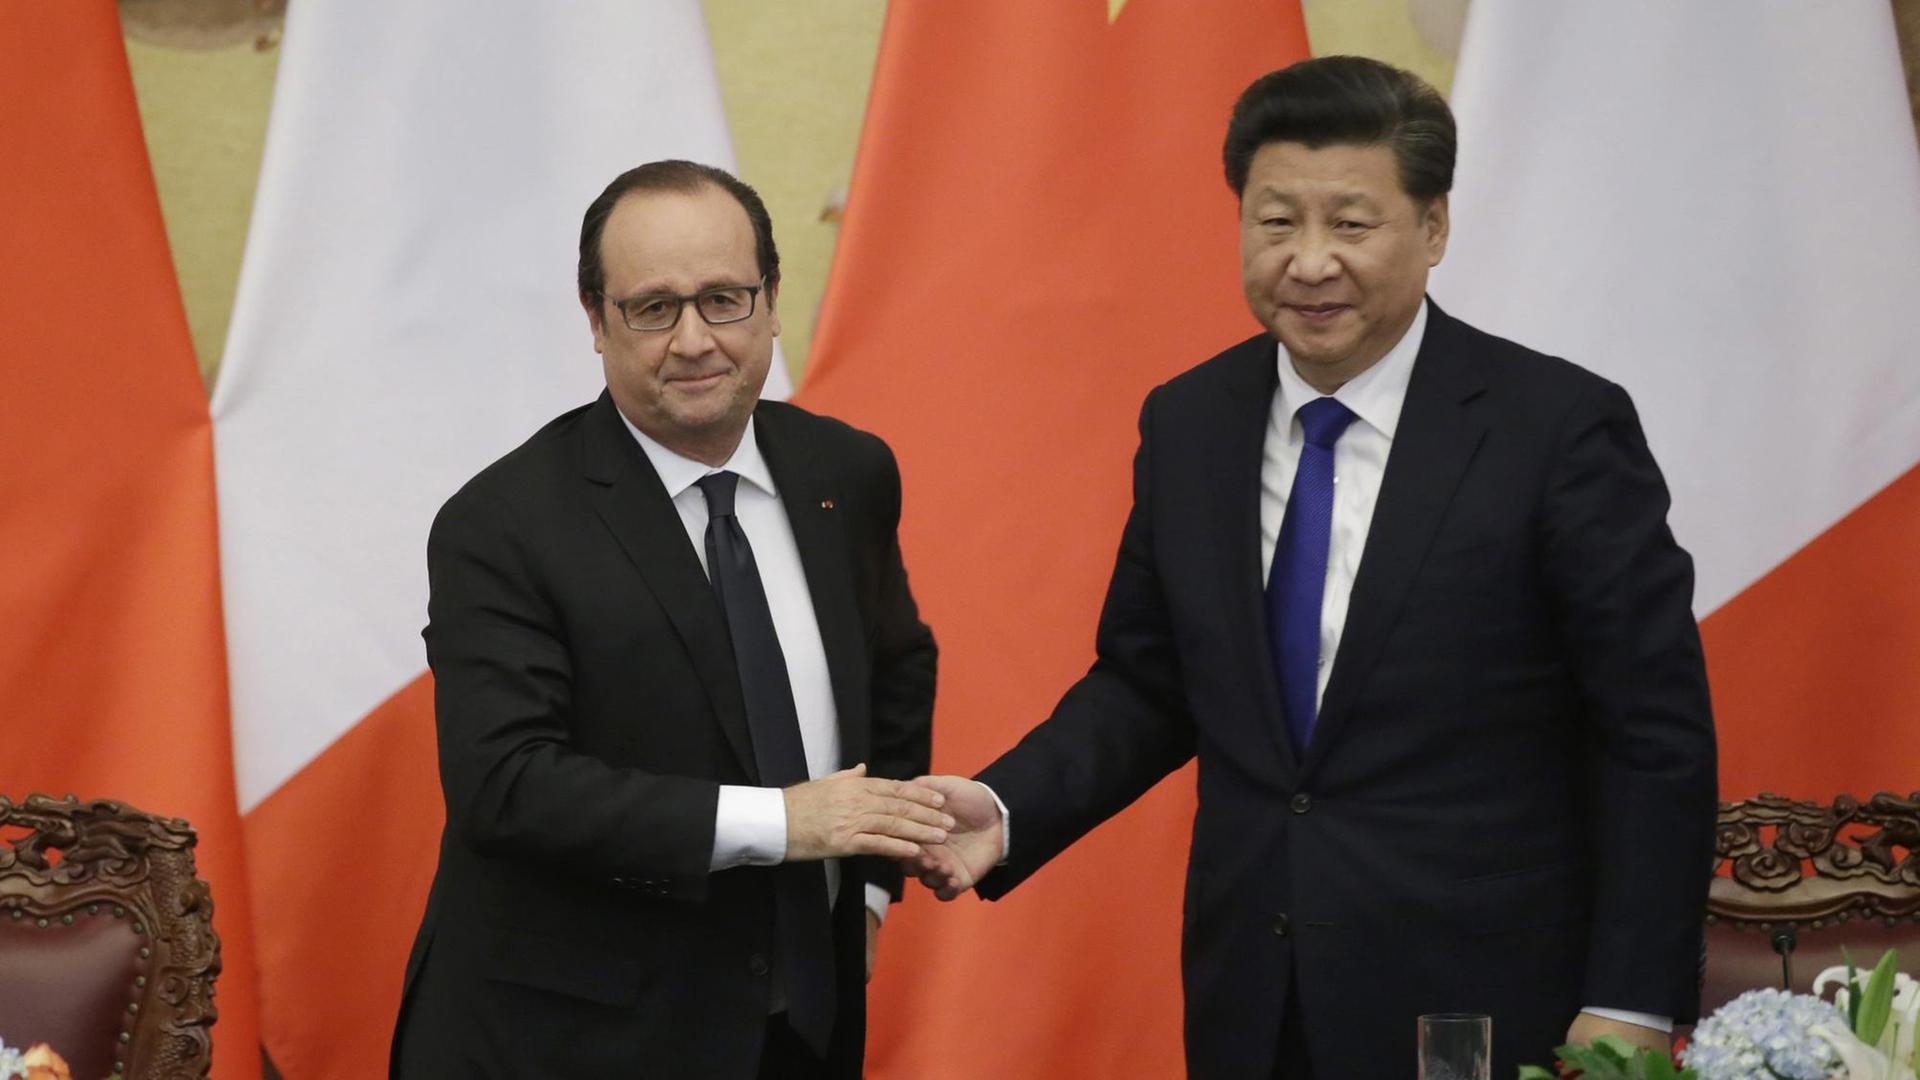 Frankreichs Präsident Hollande und der chinesische Präsident Xi